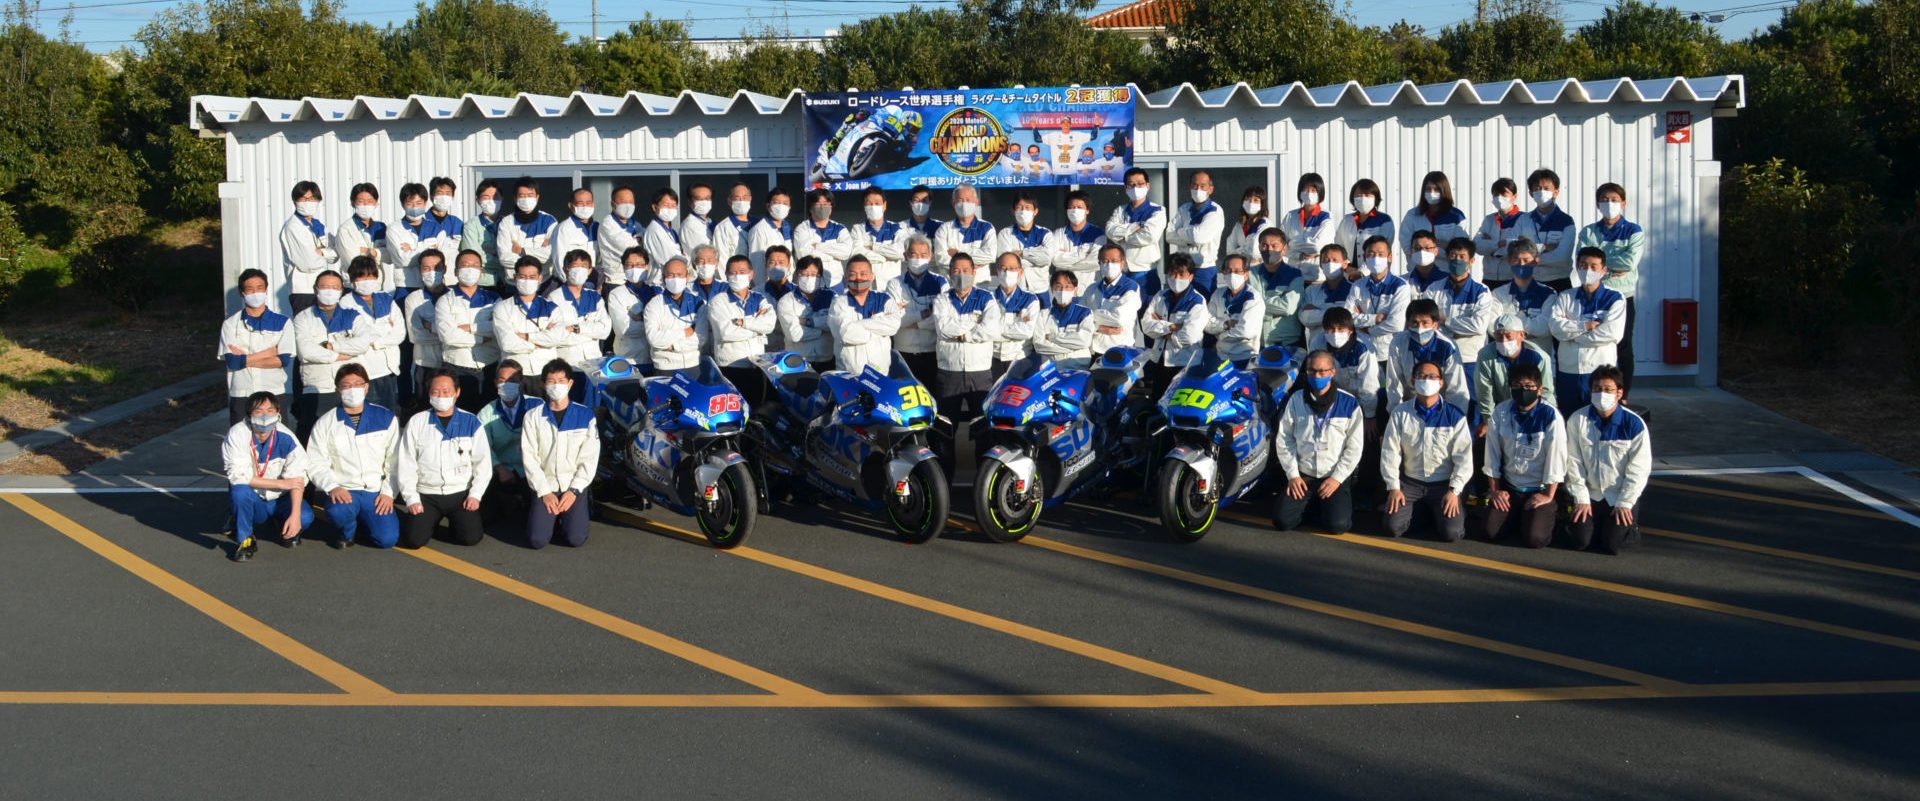 La saison exceptionnelle de Suzuki valait bien une photo de groupe, et au siège qui plus est ... 